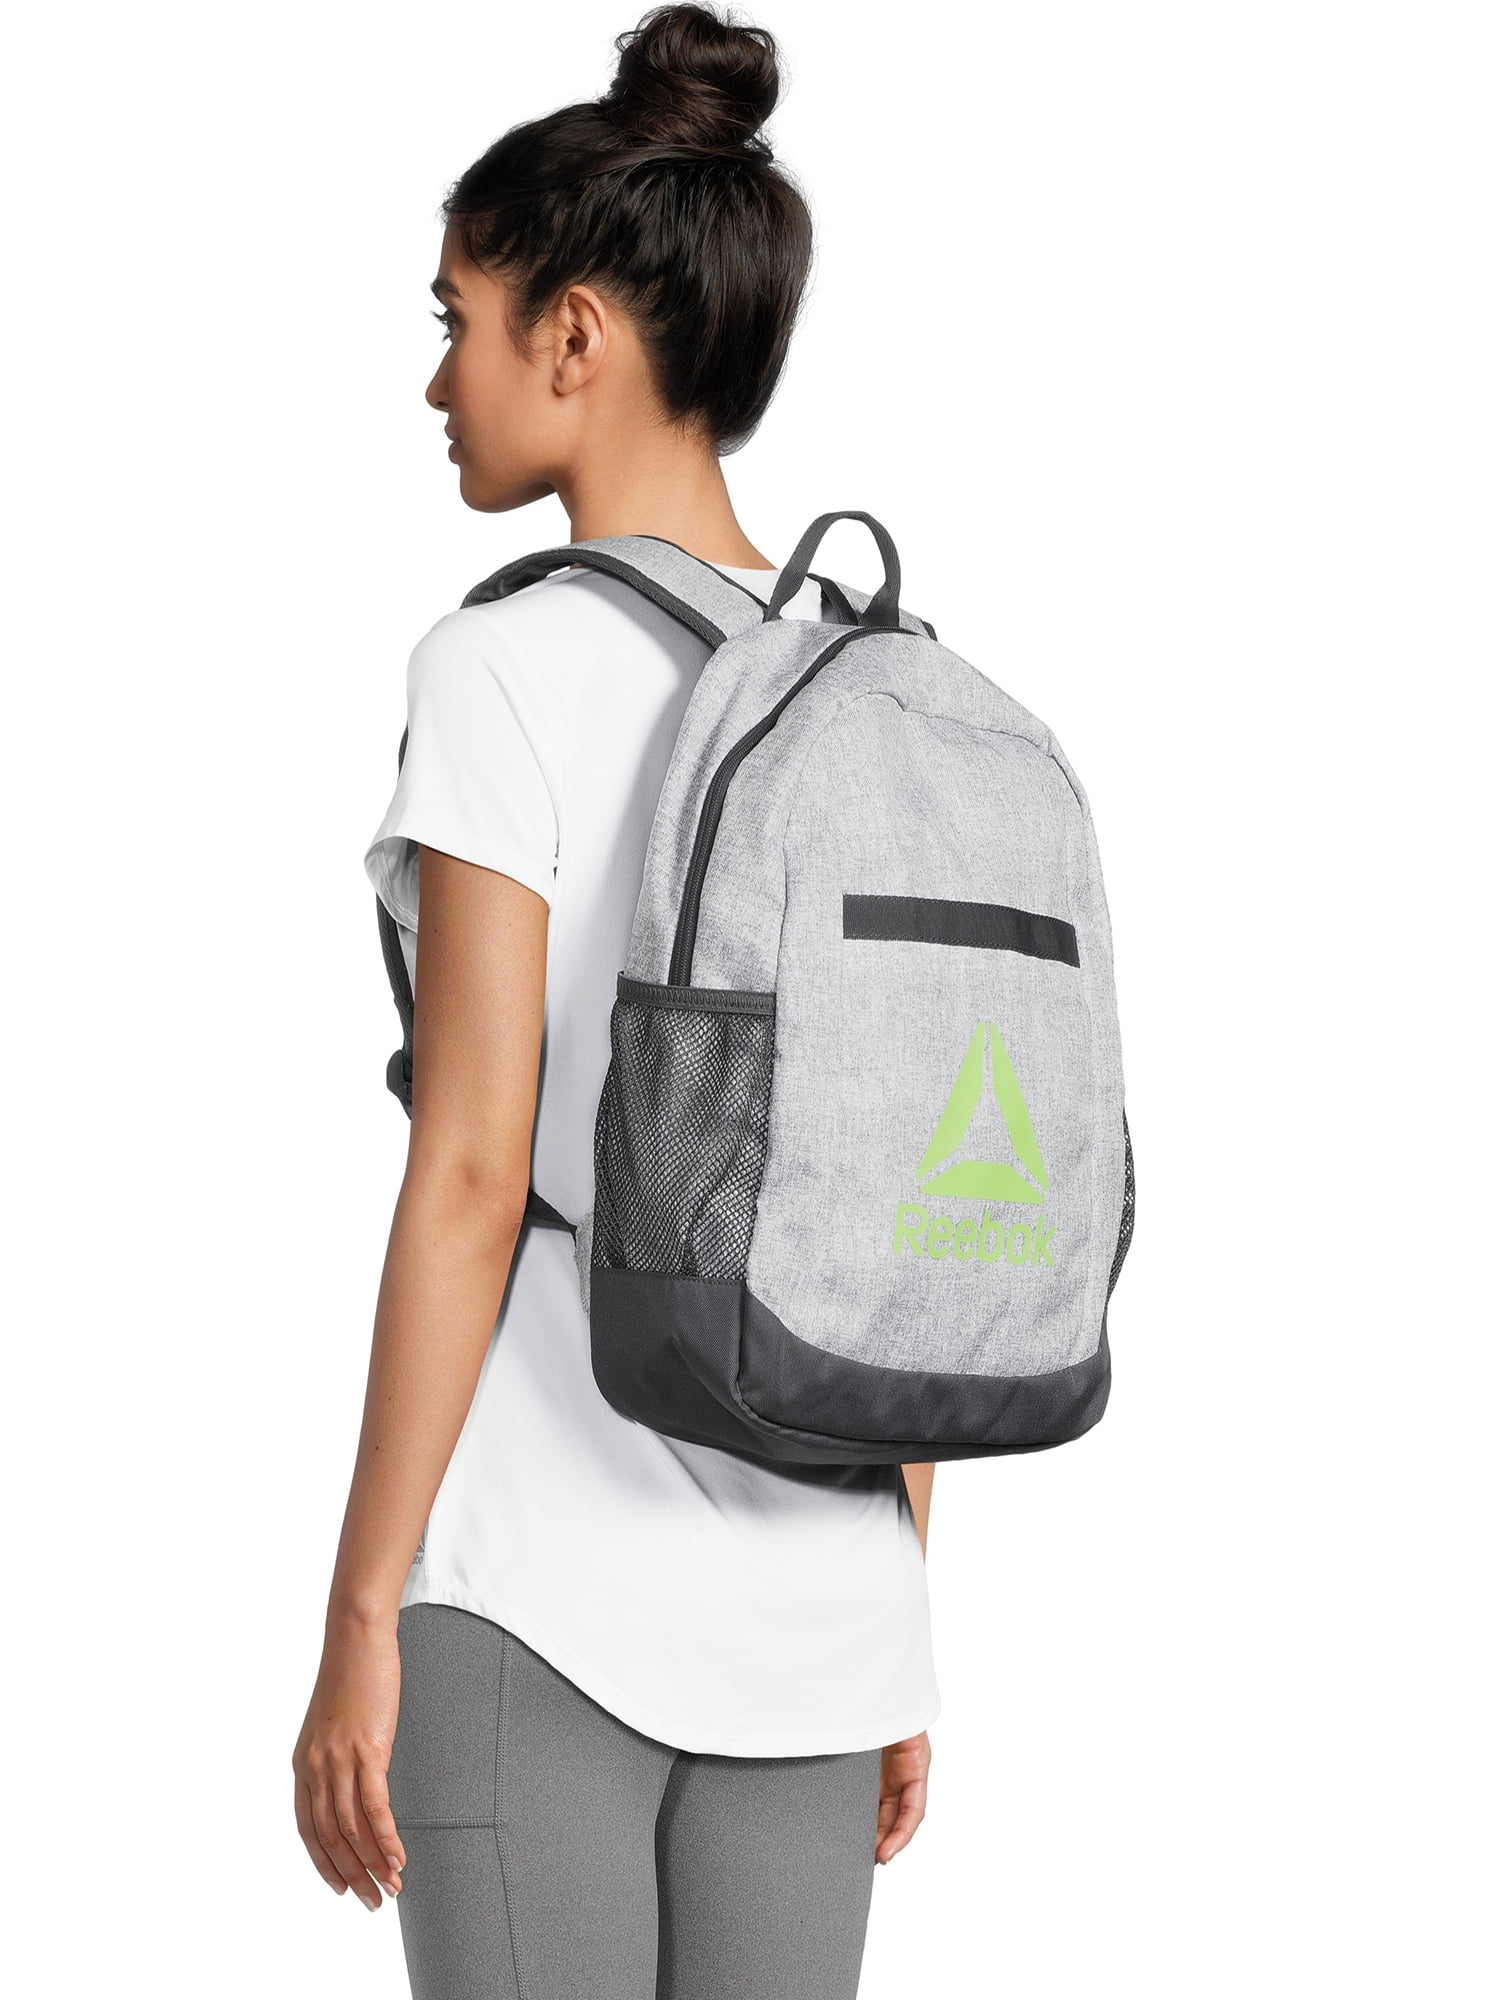 Reebok Unisex Adult Hudson Backpack - Dark Heather Gray, Adult Unisex, Size: One Size